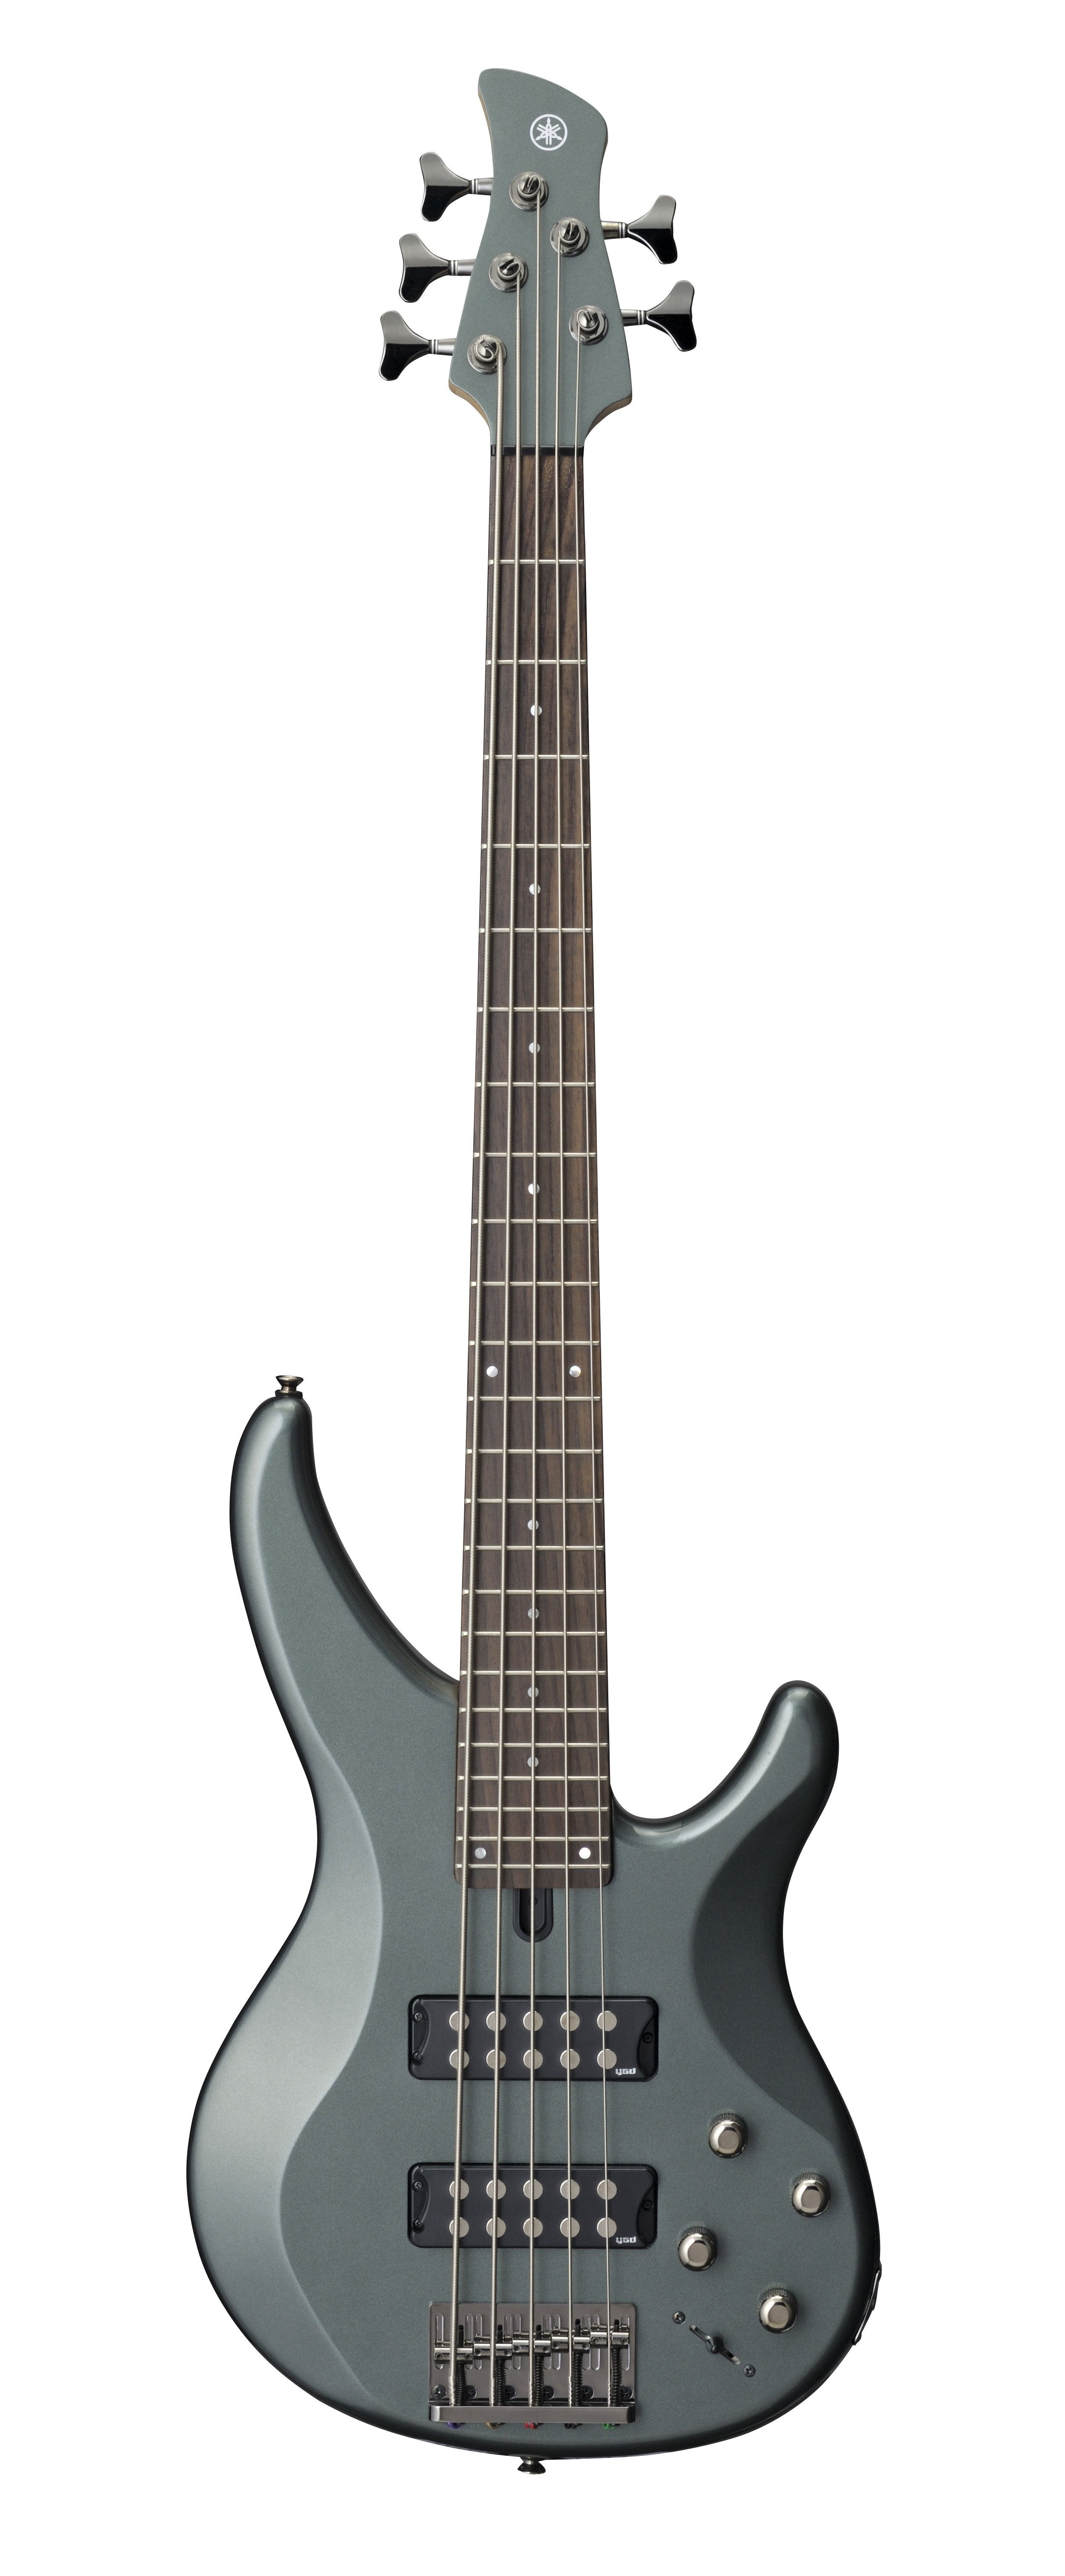 YAMAHA TRBX305 5-String Electric Bass Guitar (Mist Green)